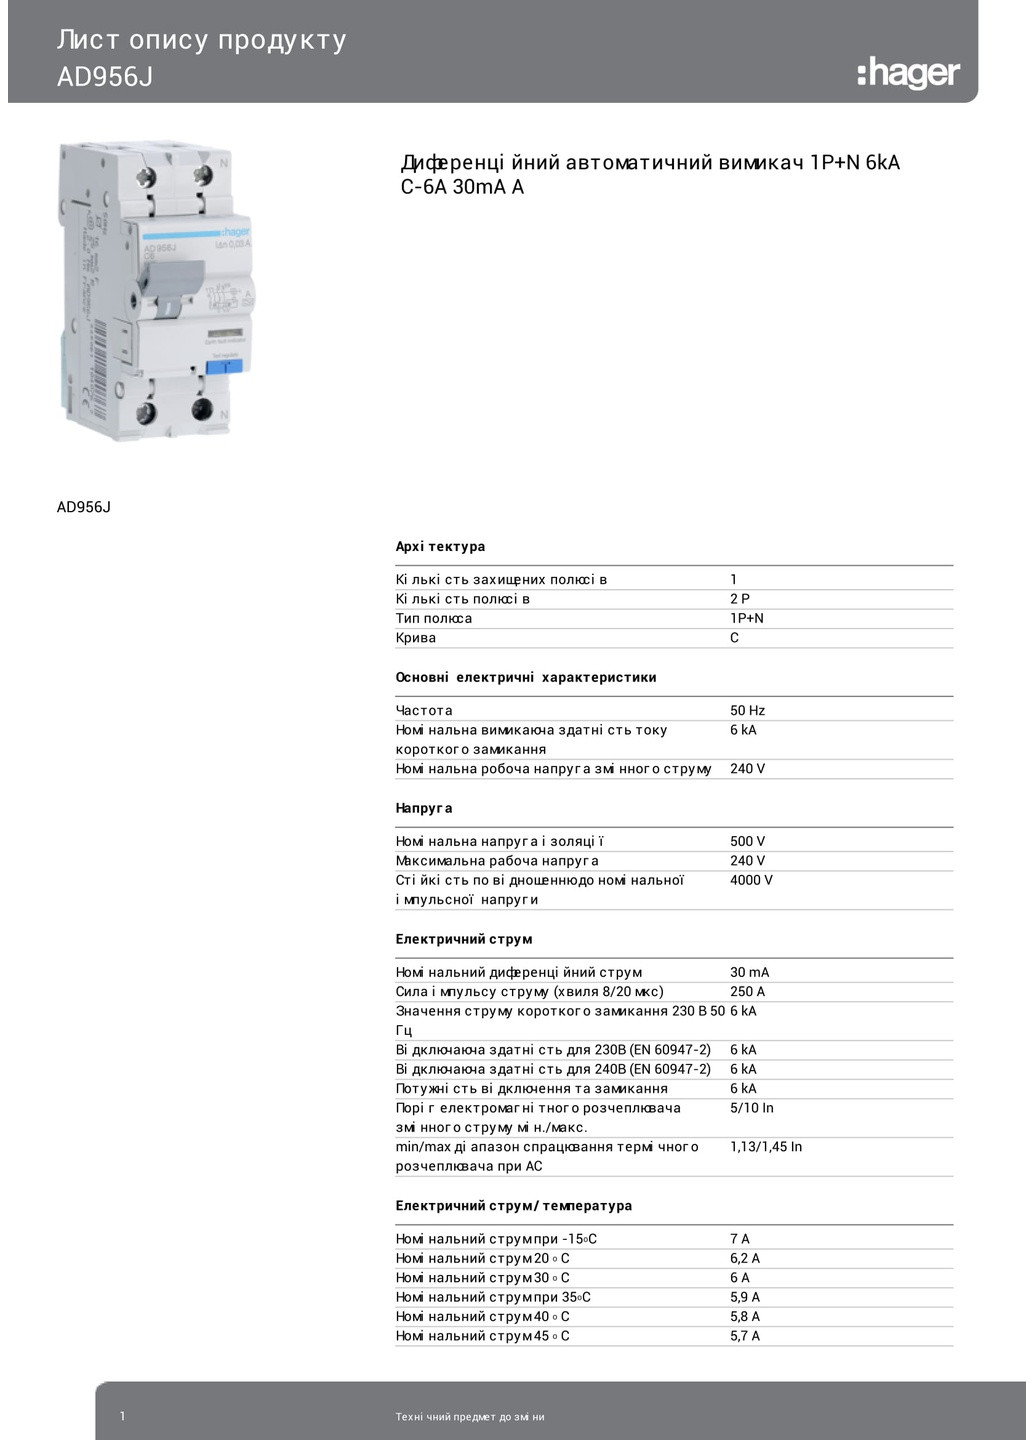 Диференціальний автоматичний вимикач AD956J 1P+N 6kA C6A 30mA тип A дифавтомат (3308) Hager (265535655)